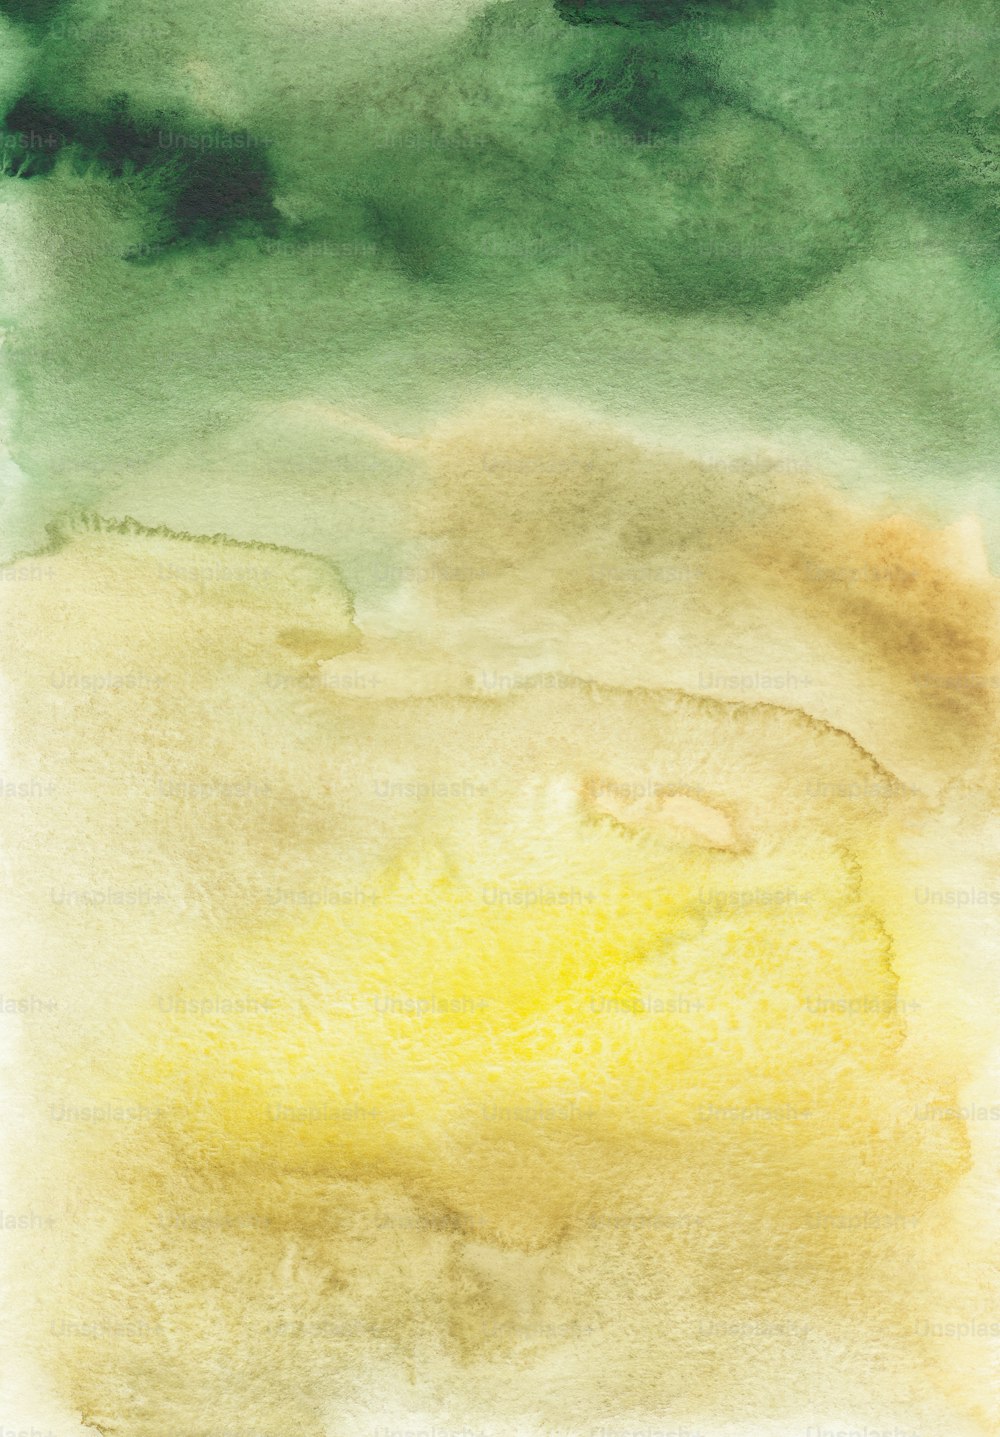 Una acuarela de un área amarilla y verde